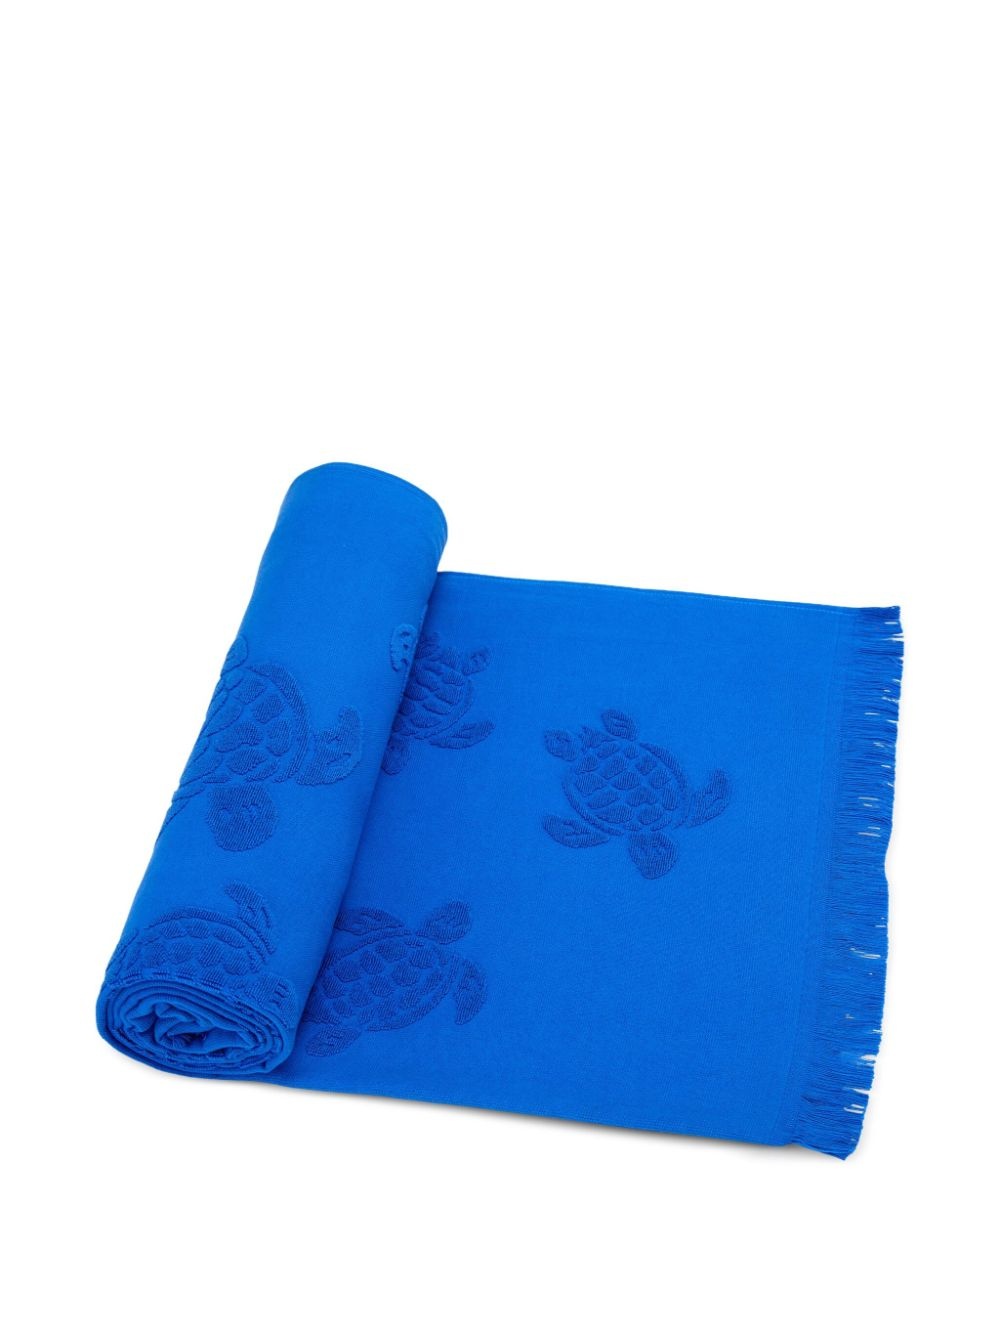 Santah turtle-jacquard beach towel - 3